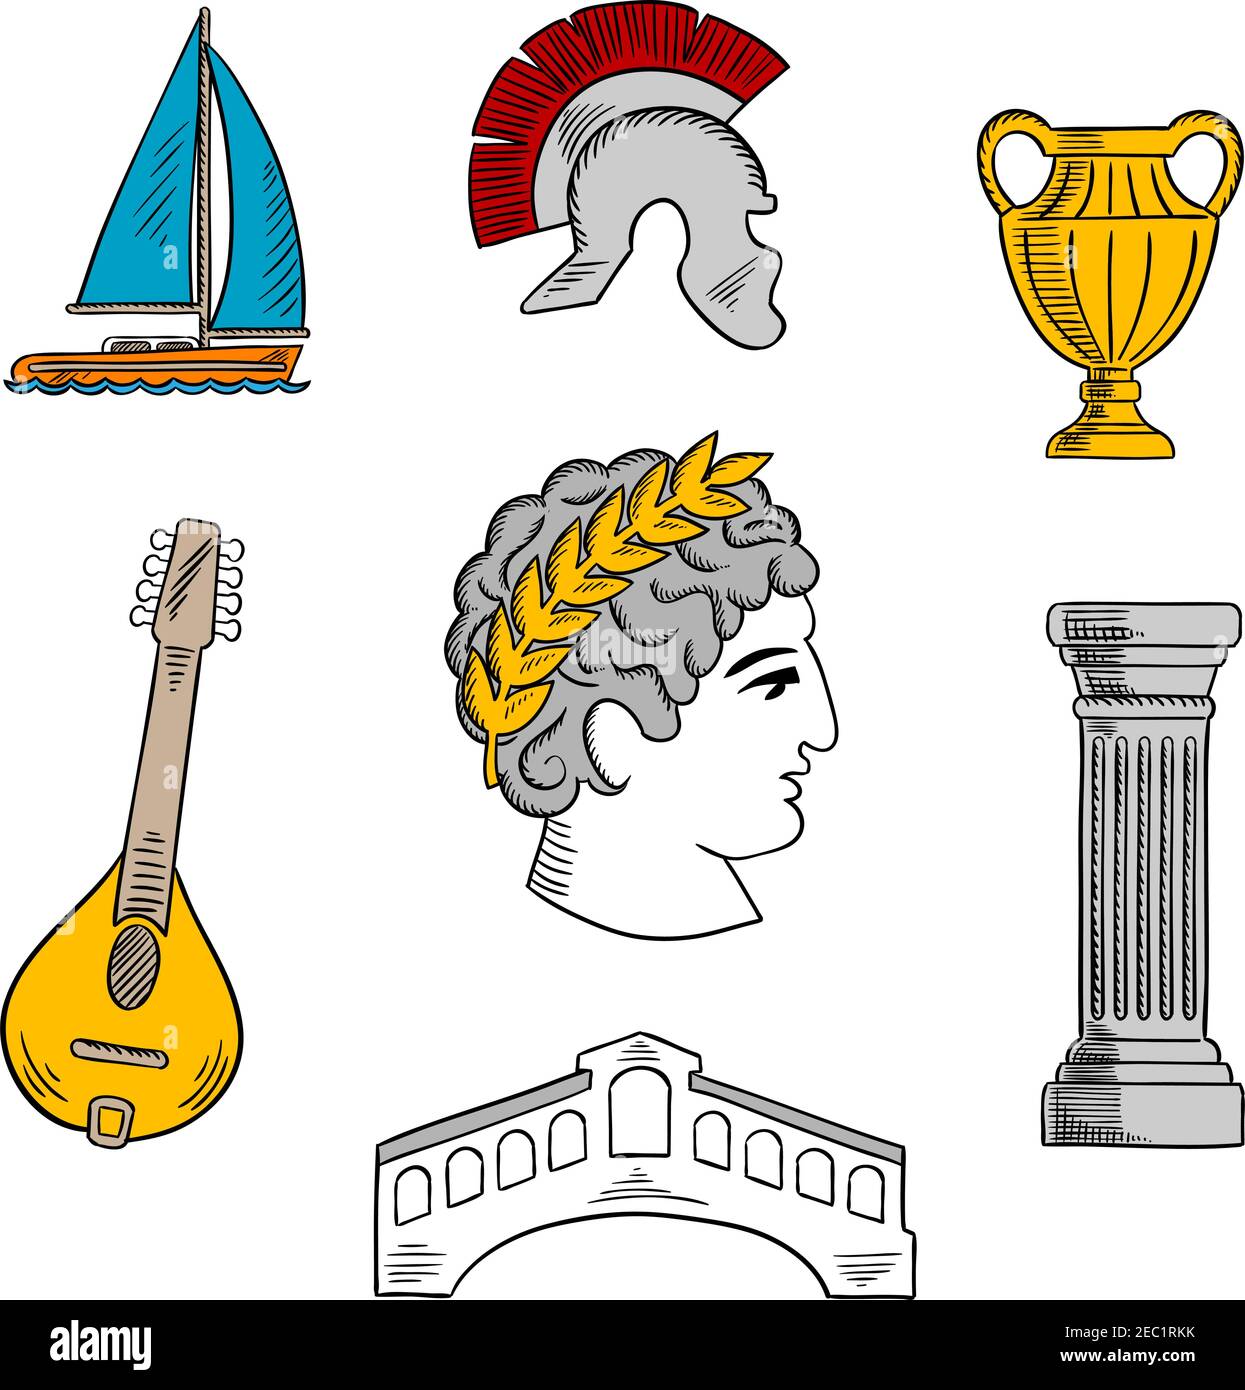 Beliebte touristische Attraktionen von Italien mit Büste von Julius Caesar Kaiser, alten römischen Helm, antike Säule und Vase, Mandoline, venezianischen Rialto bri Stock Vektor